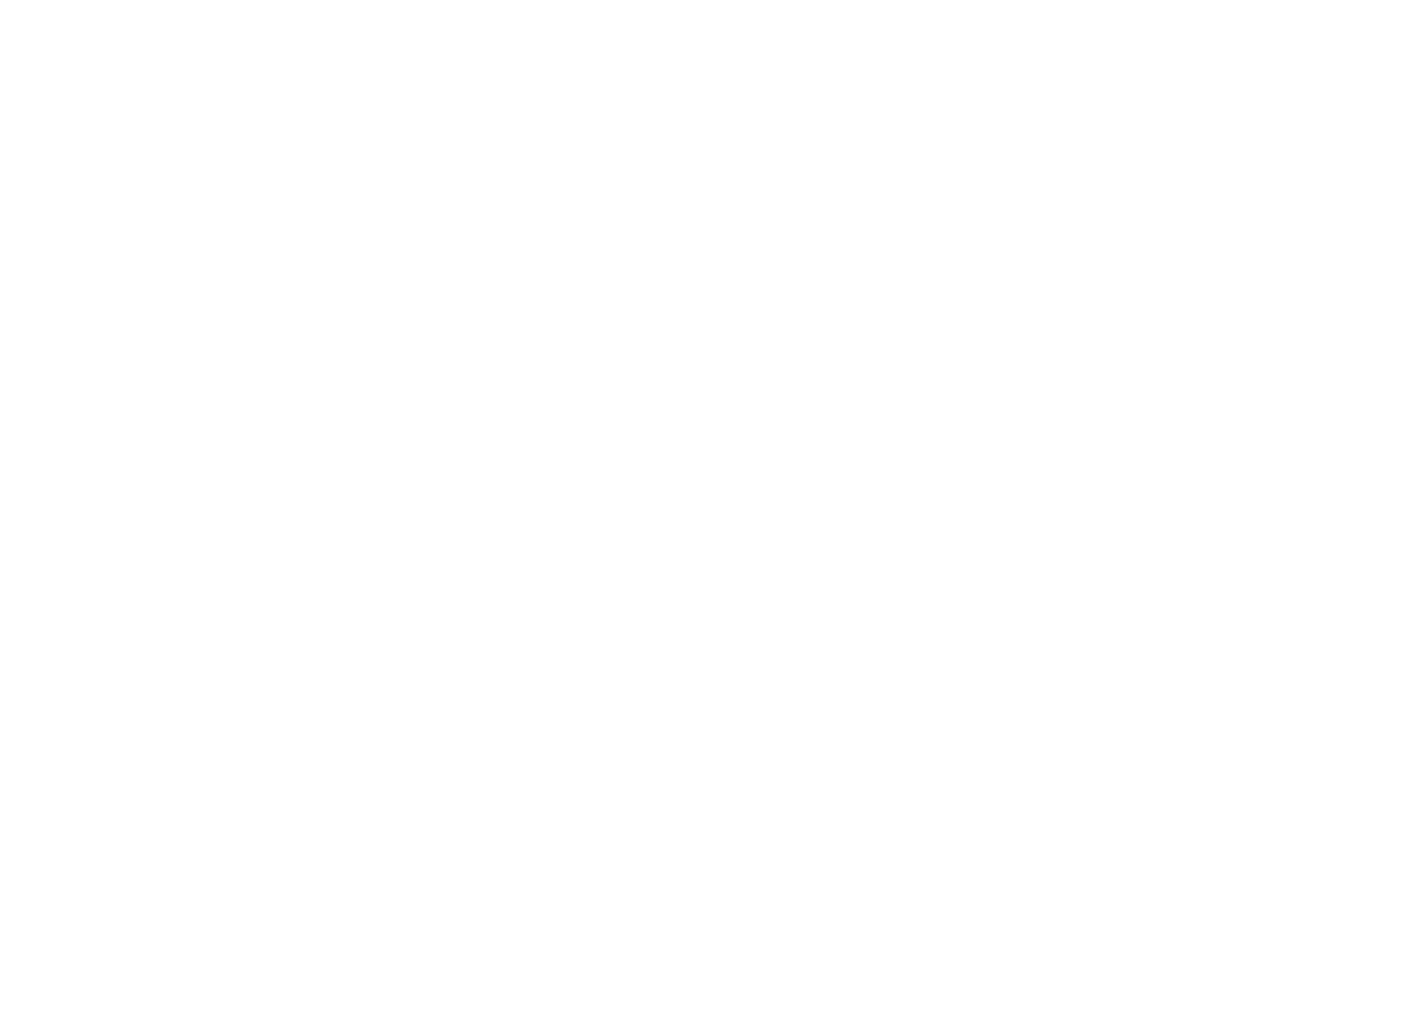 PARTY BARN MEDIA